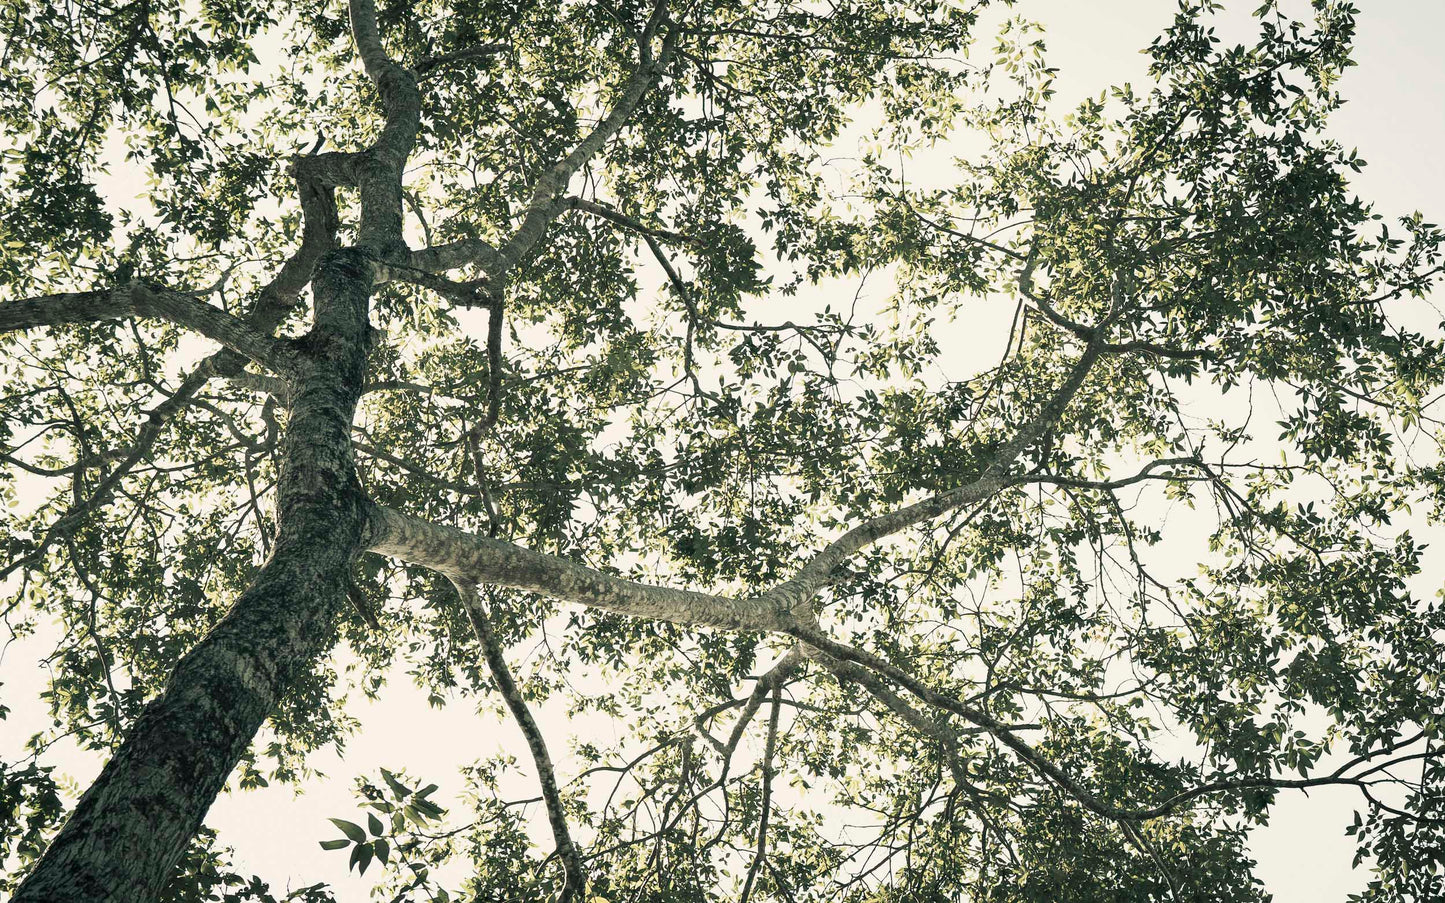 Tree of Life - Tulum